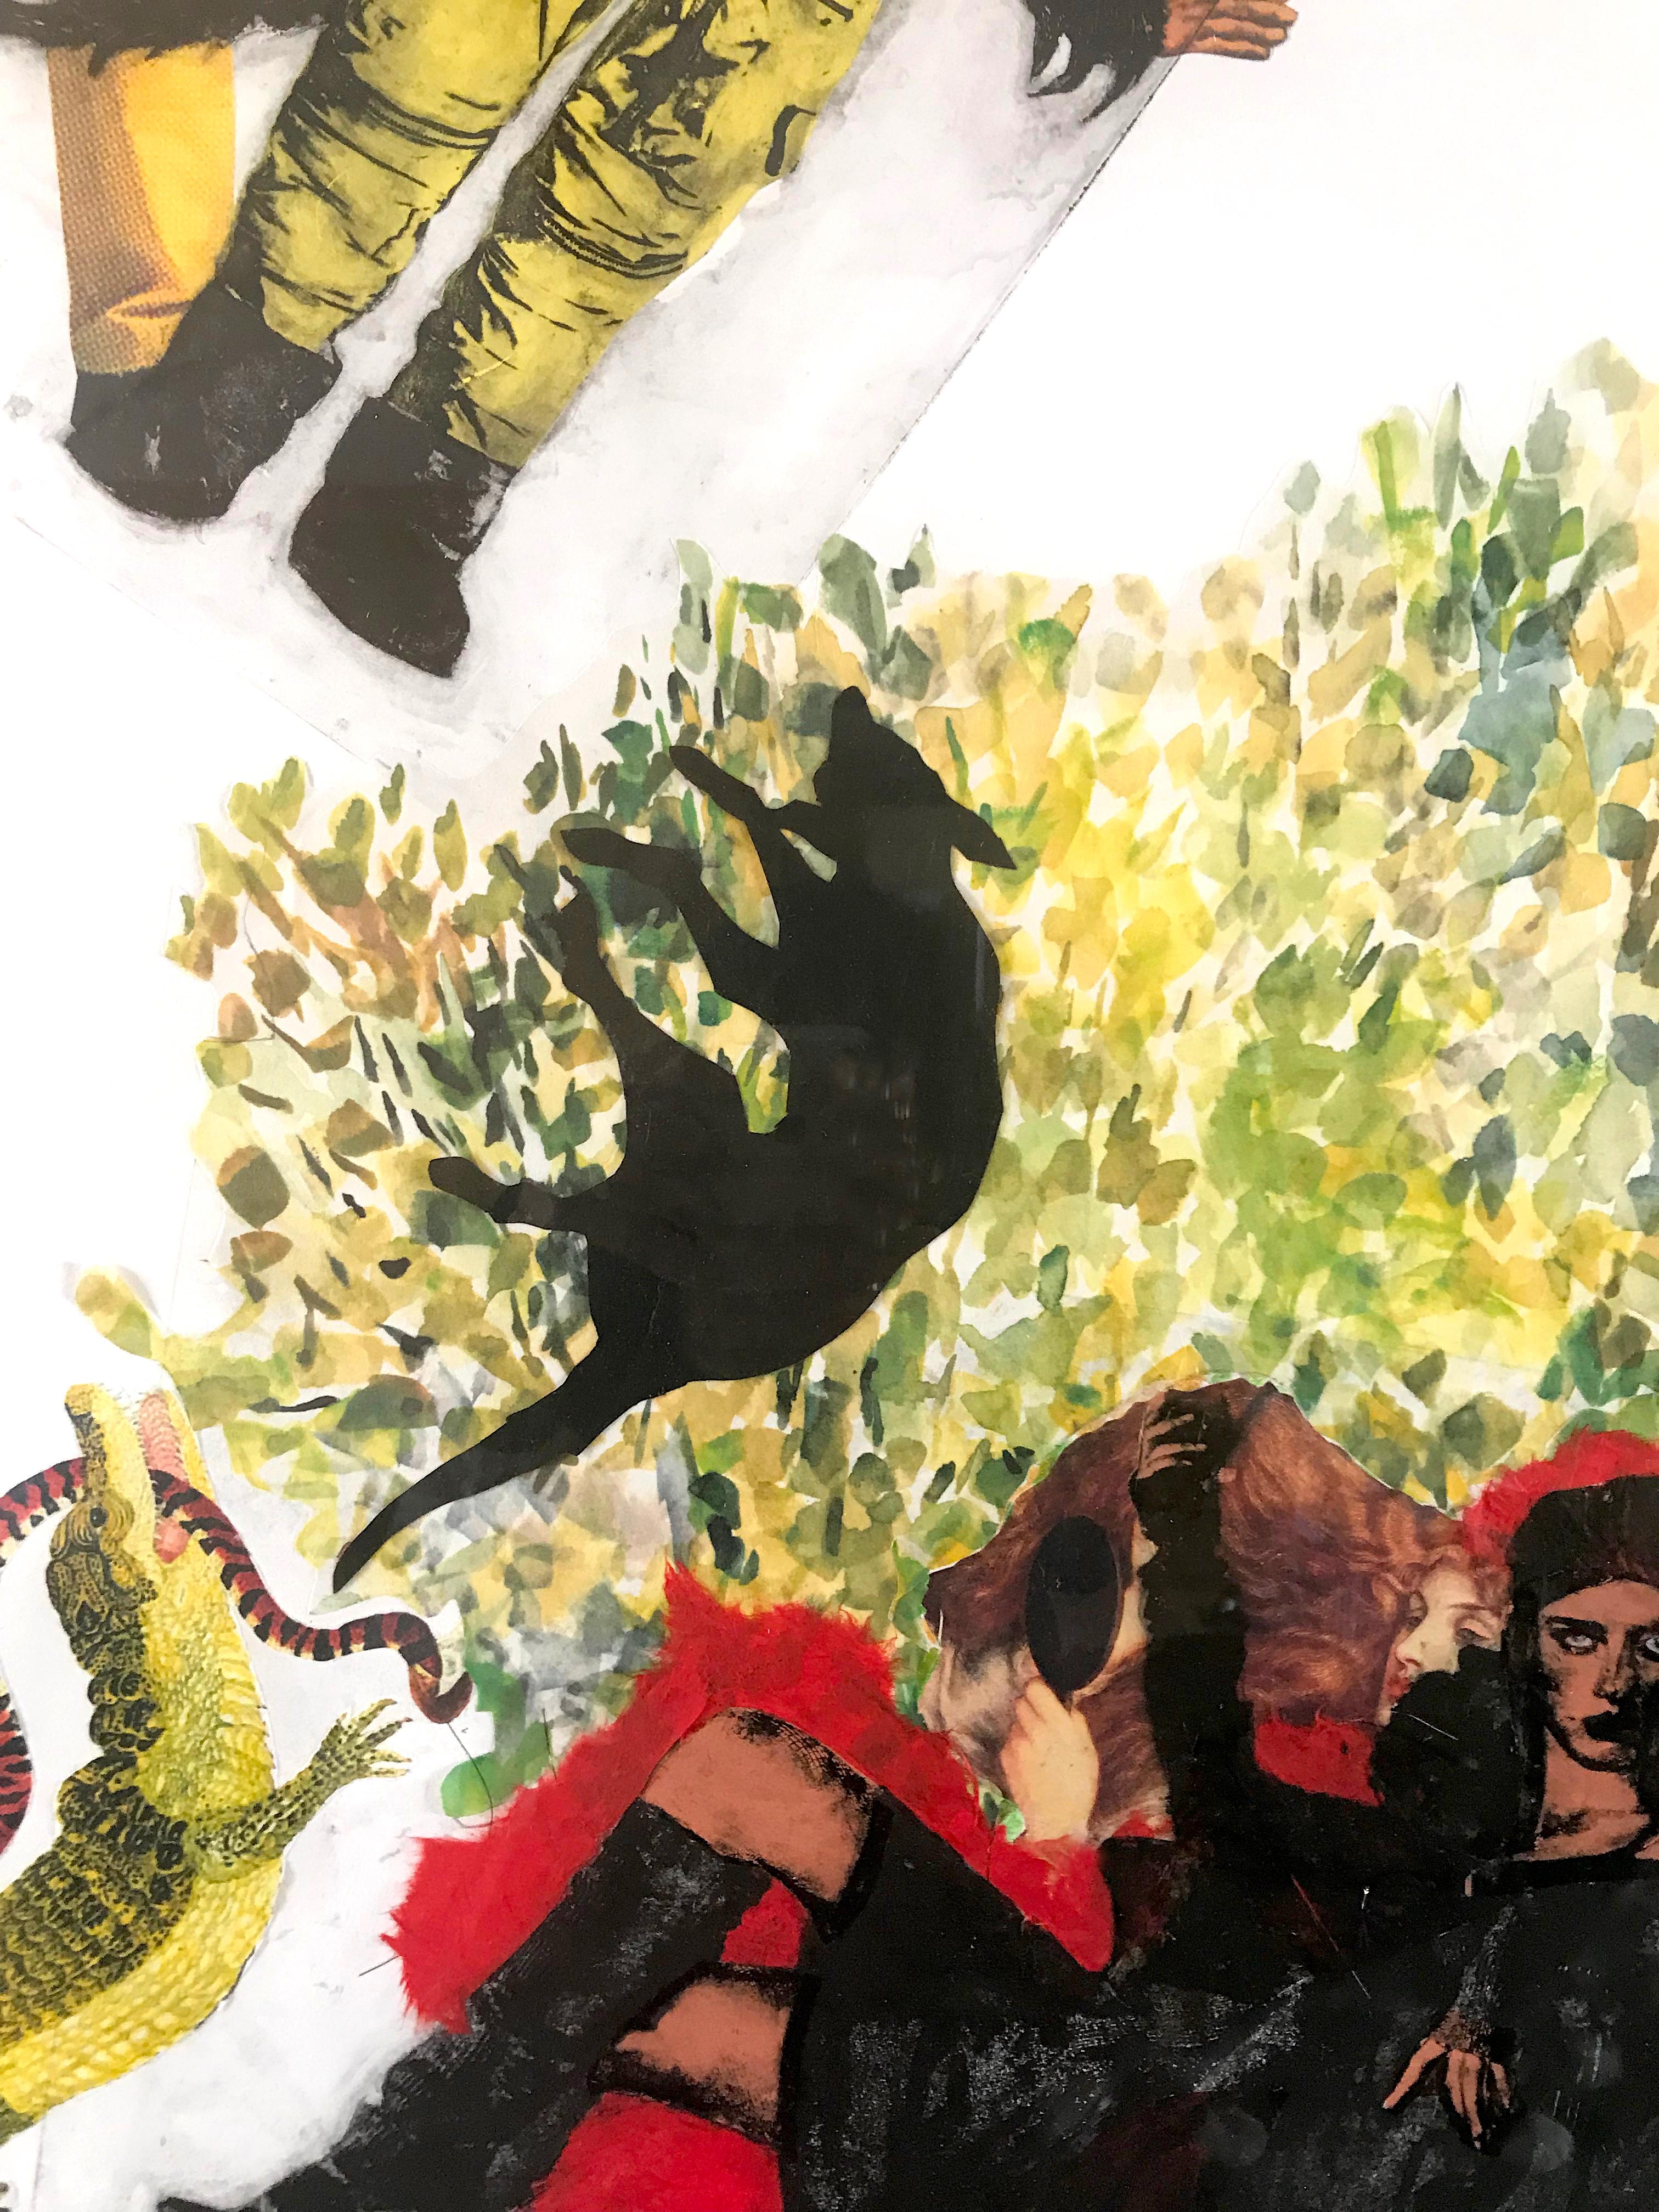 Collage contemporain réimprimé numériquement par Florence Alfano McEwin.

Aquarelle réimprimée numériquement en taille-douce à deux plaques avec collage et chine collé de papier trouvé, peint, déchiré, découpé et modifié numériquement. 1/3 e.v.

Les